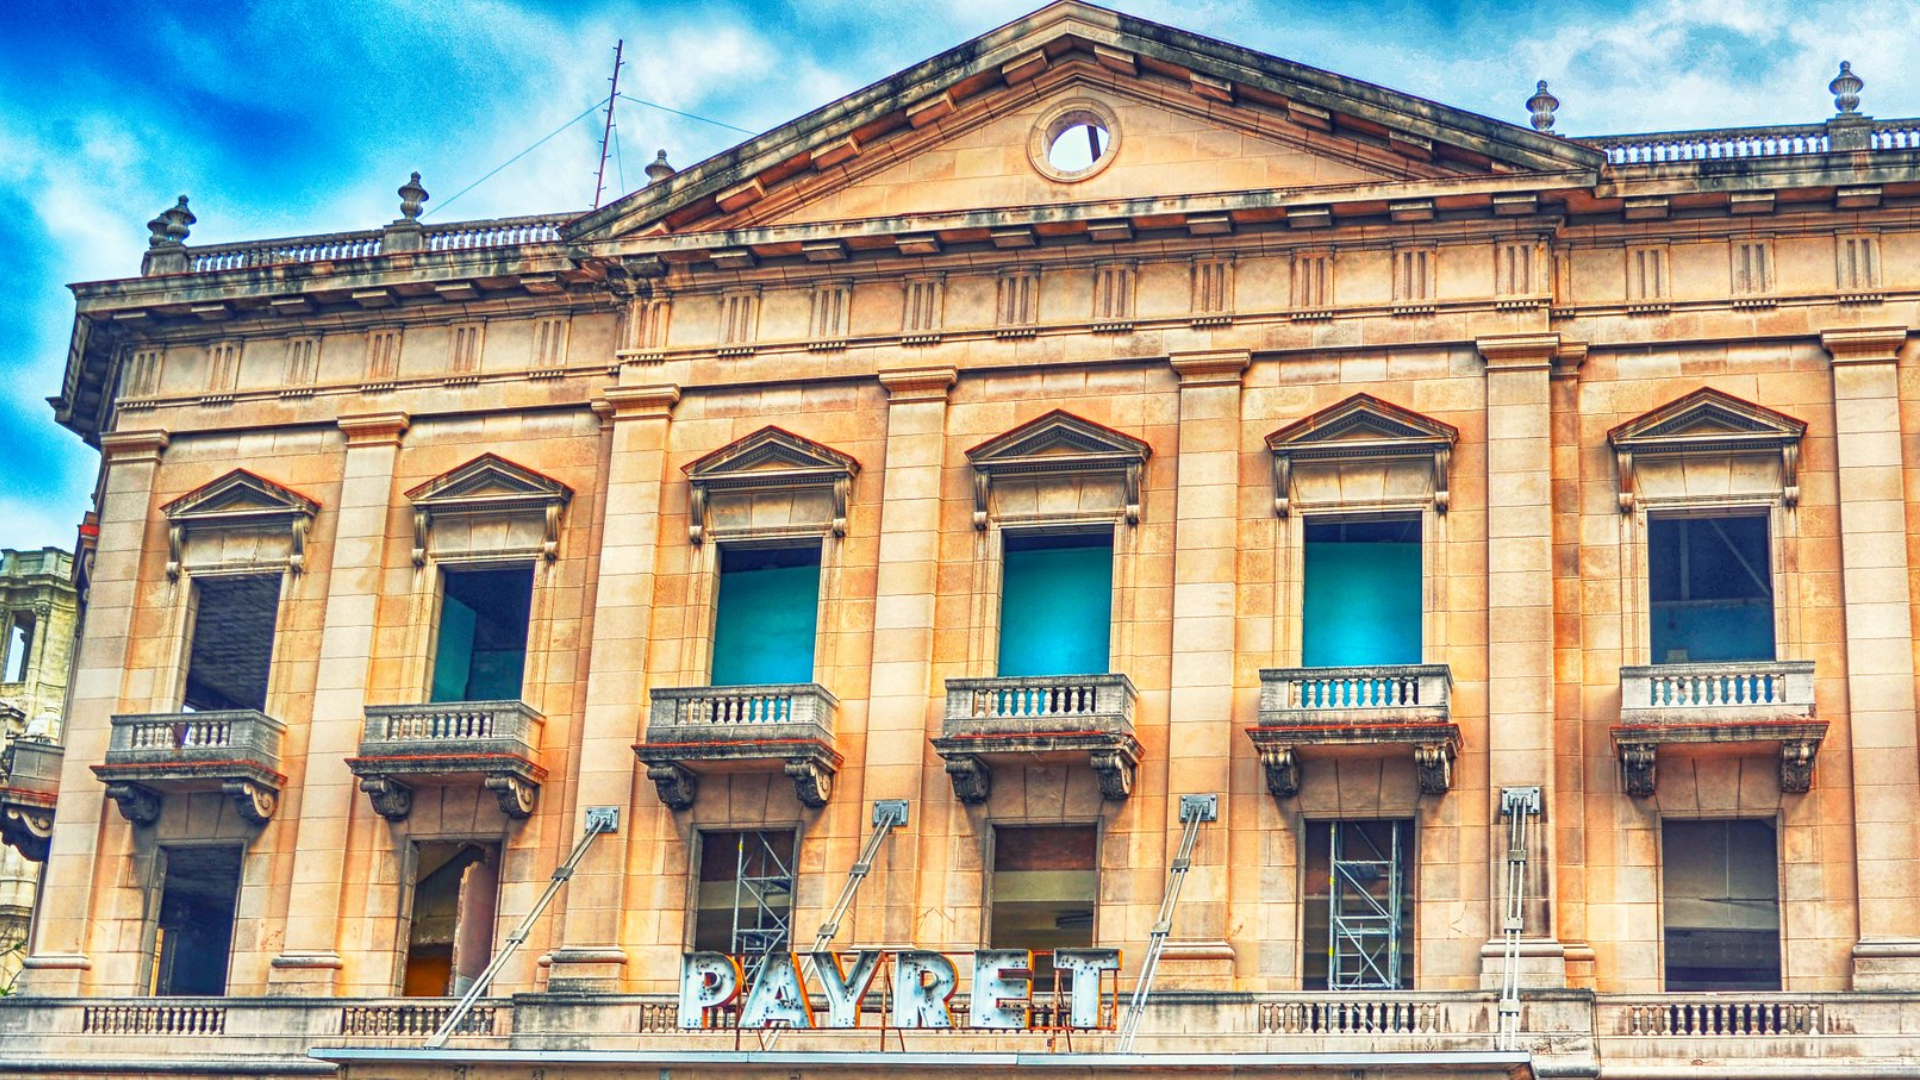 ¡Adiós Payret! Avanza construcción de nuevo hotel en La Habana